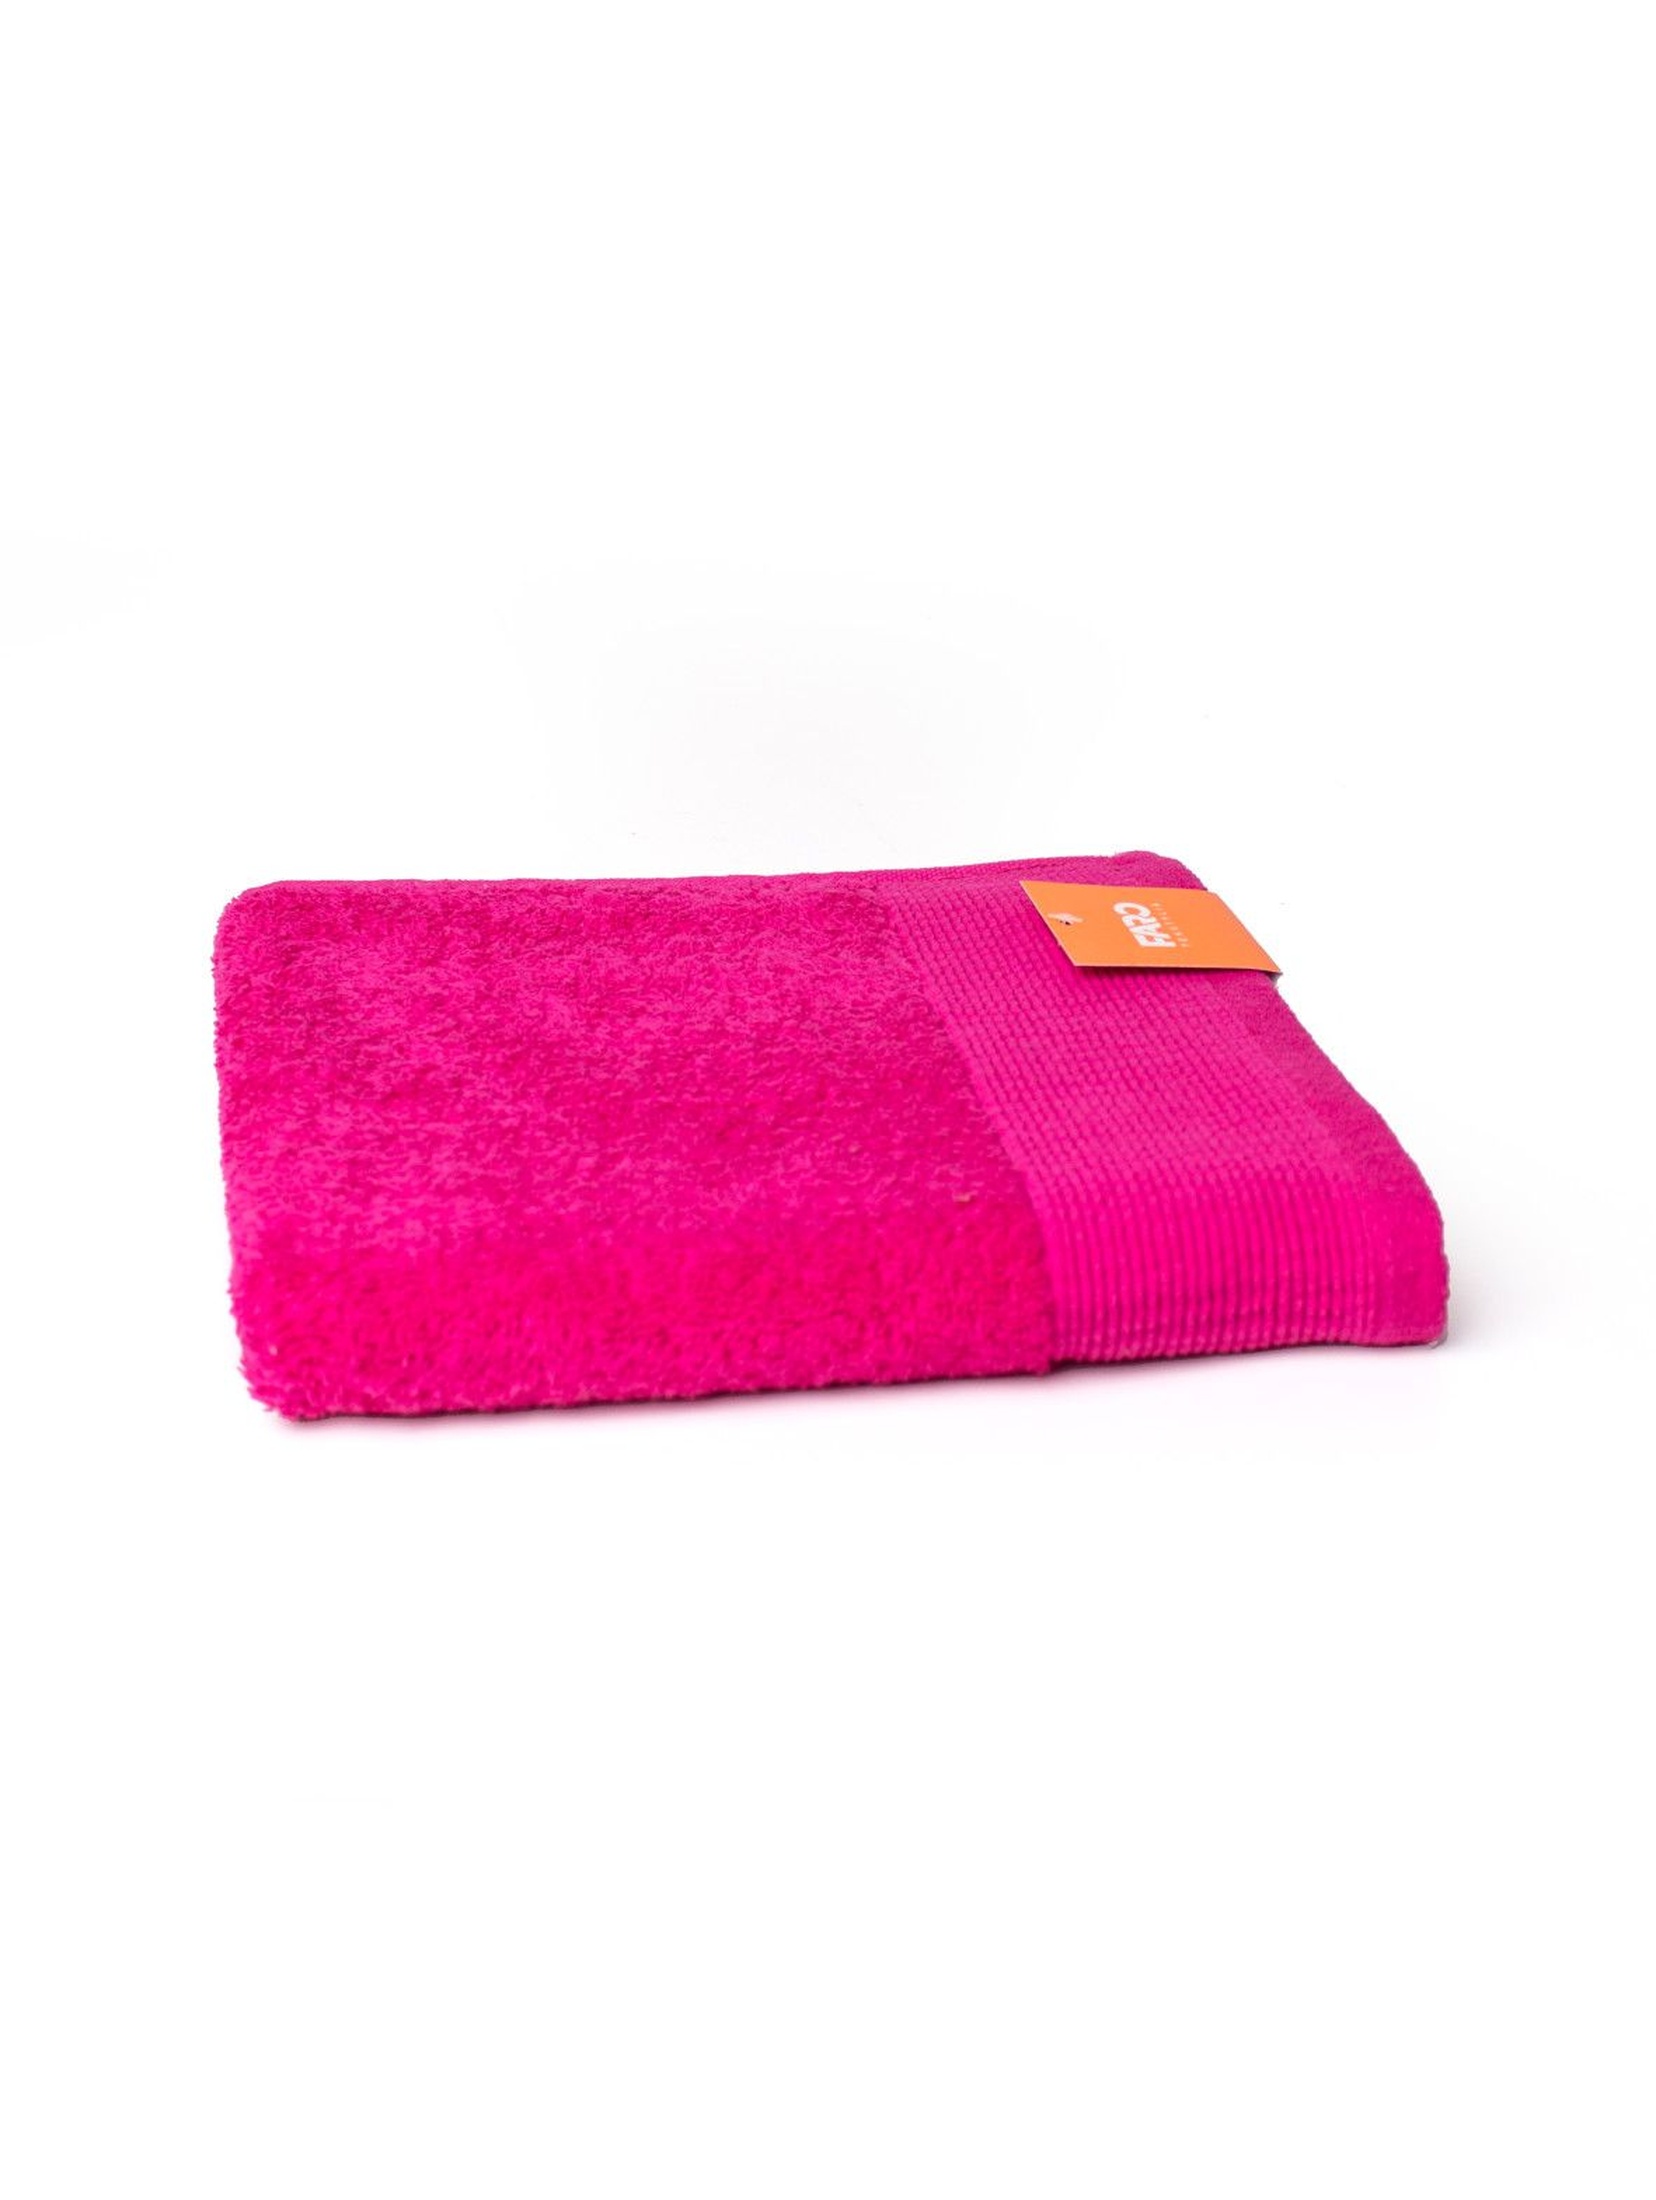 Ręcznik Aqua Frotte w kolorze różowym 70x140 cm